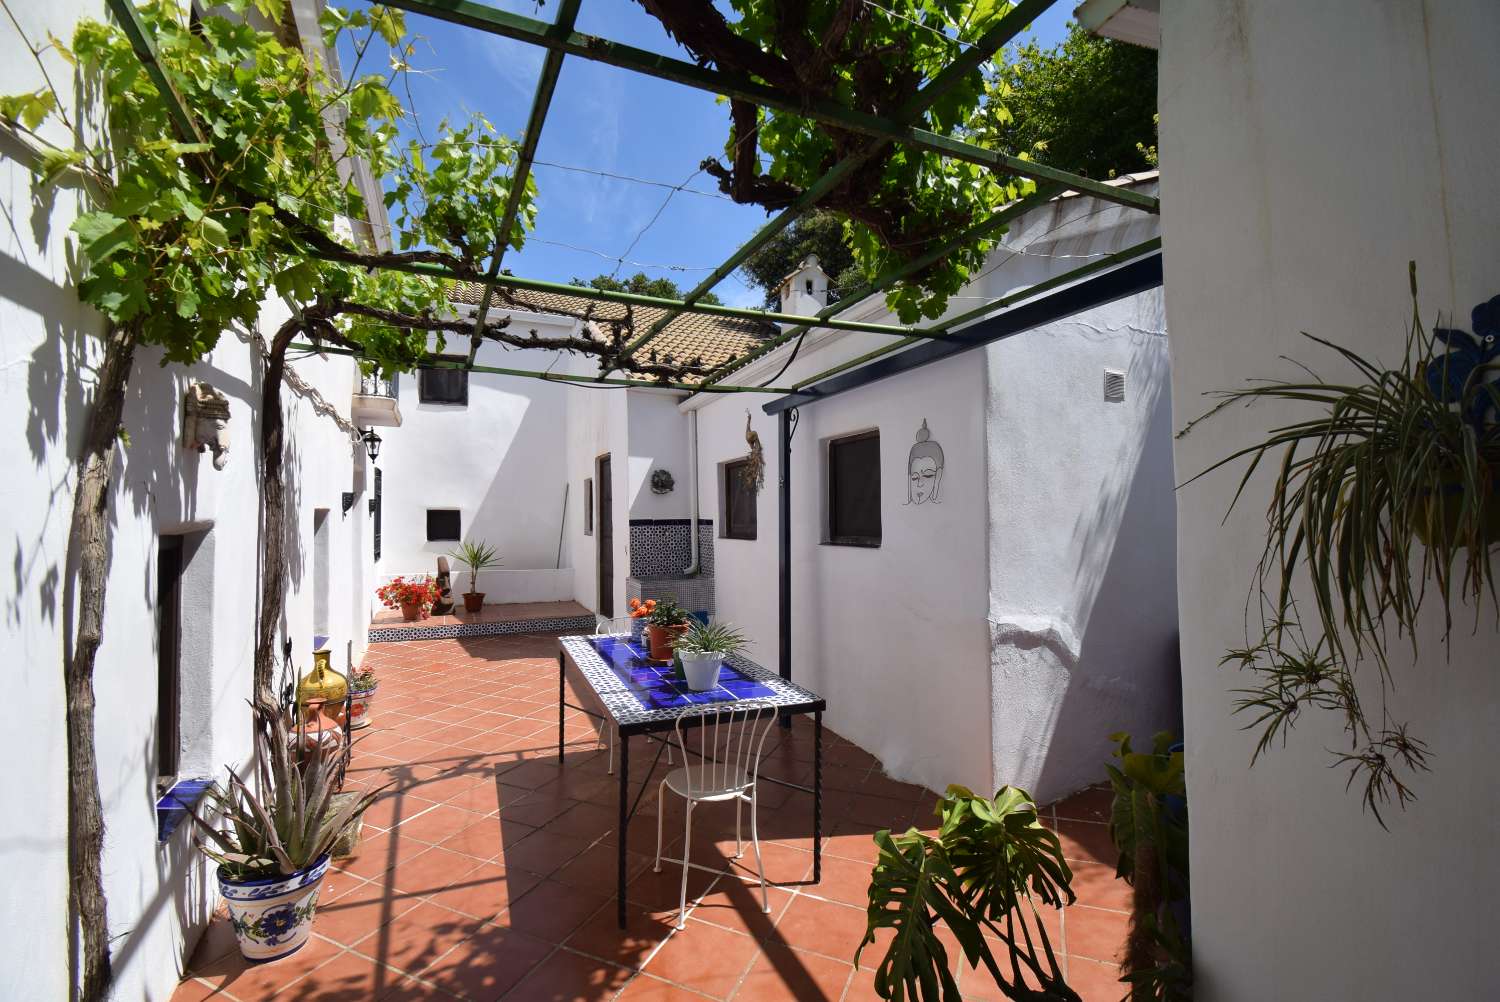 Persoonallinen andalusialainen maalaistalo, jossa on 2 erillistä huoneistoa